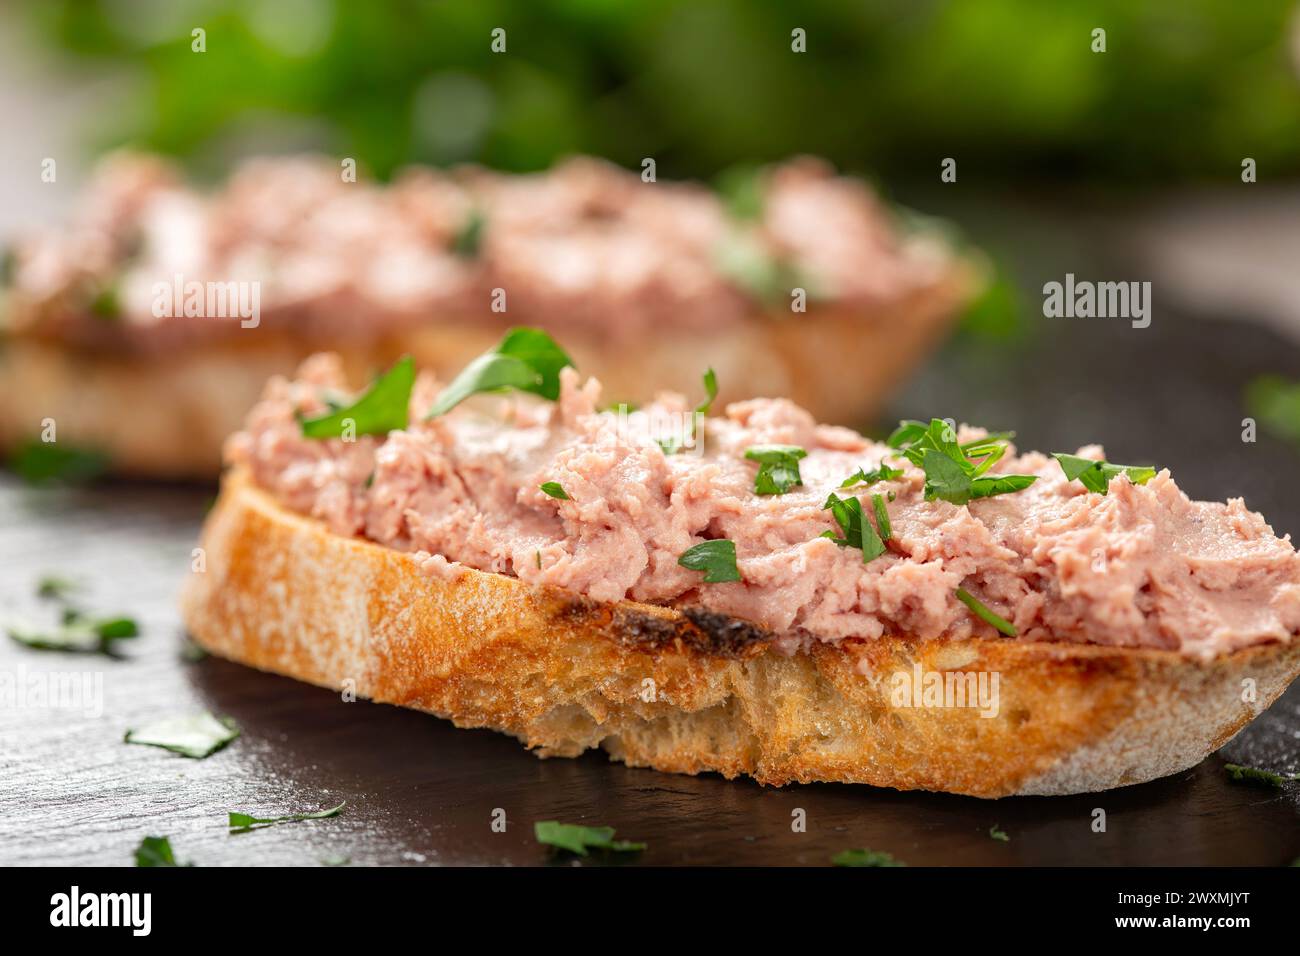 Schweineplätzchen auf geröstetem Brot mit frischen Kräutern - Nahaufnahme. Stockfoto